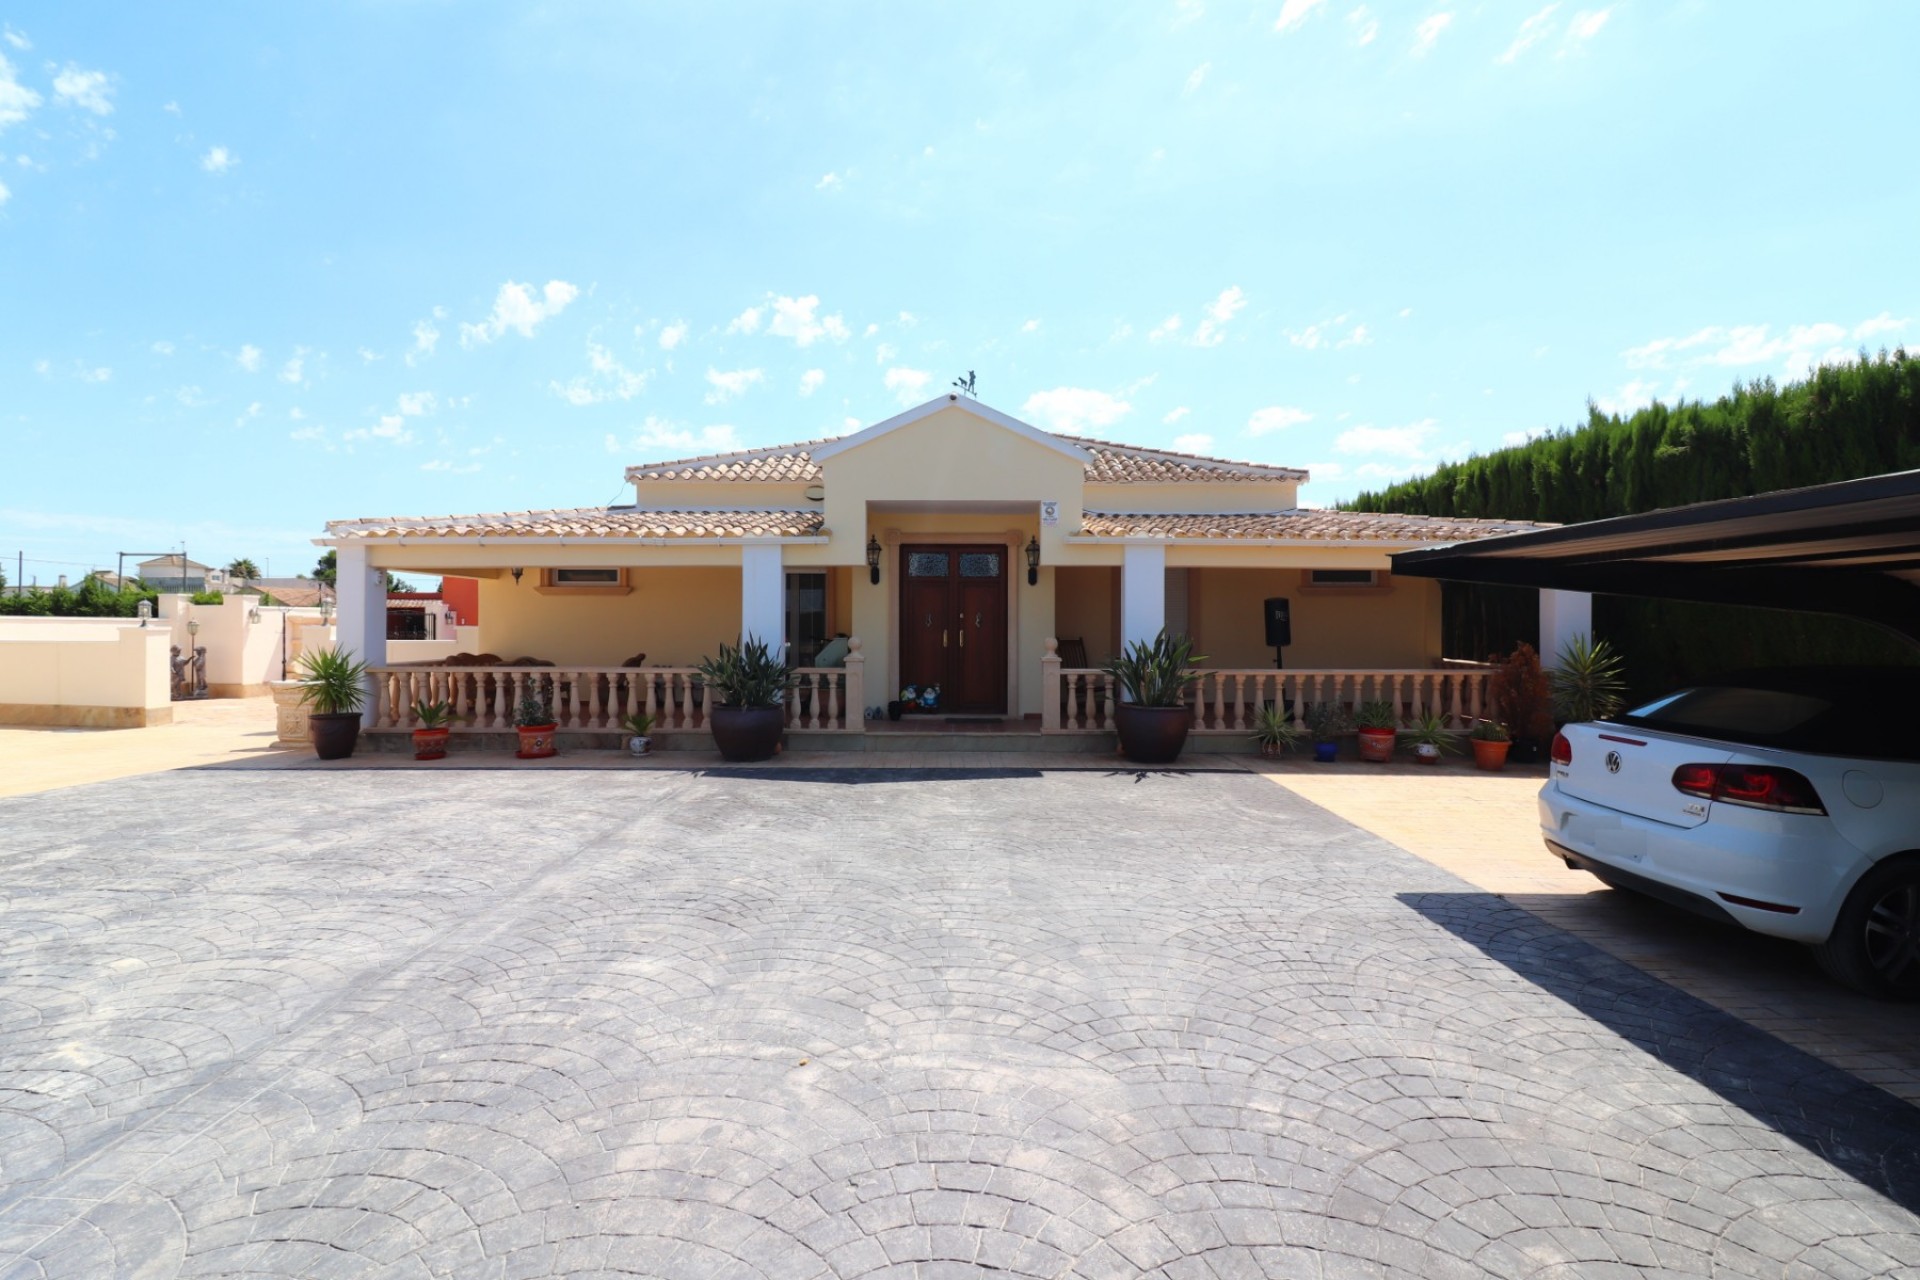 Reventa - Casa de Campo - Almoradi - Heredades - Pueblo